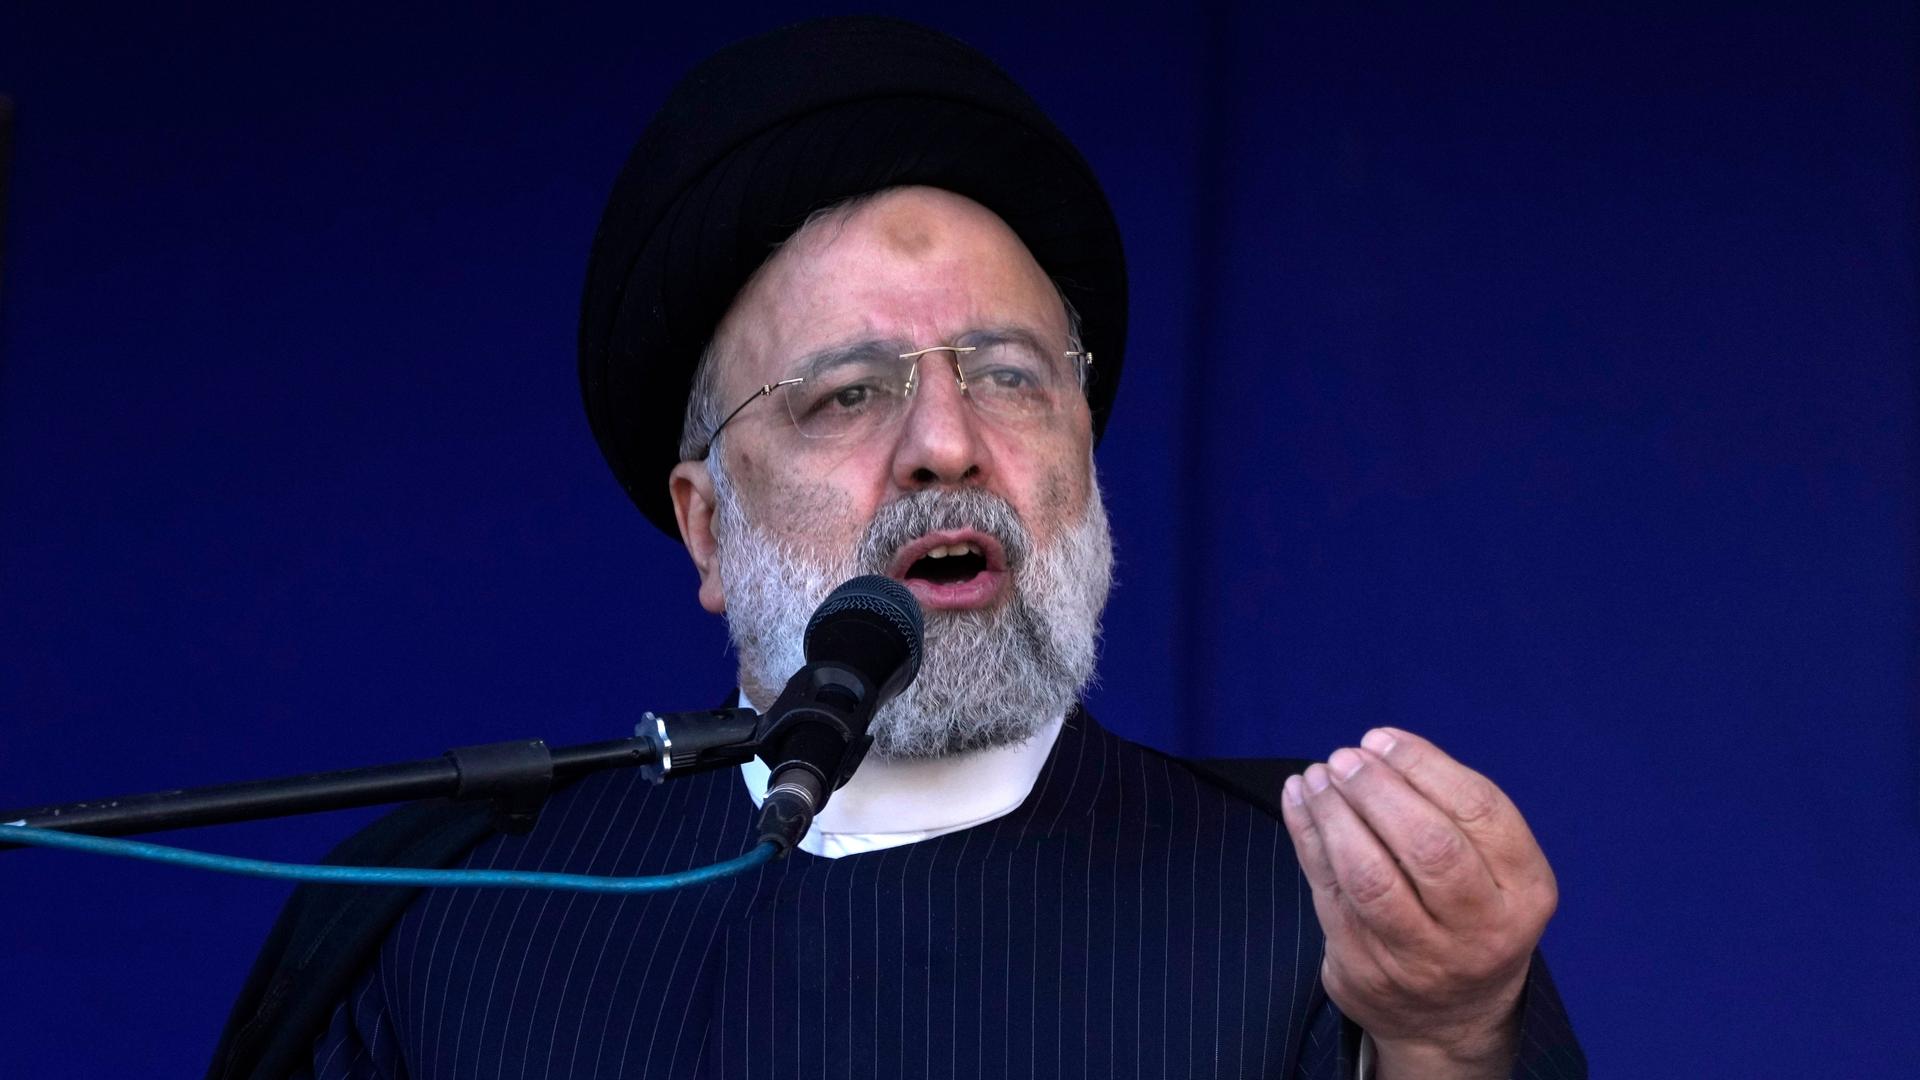 Der iranische Präsident Raisi steht vor einem Mikrofon und gestikuliert.